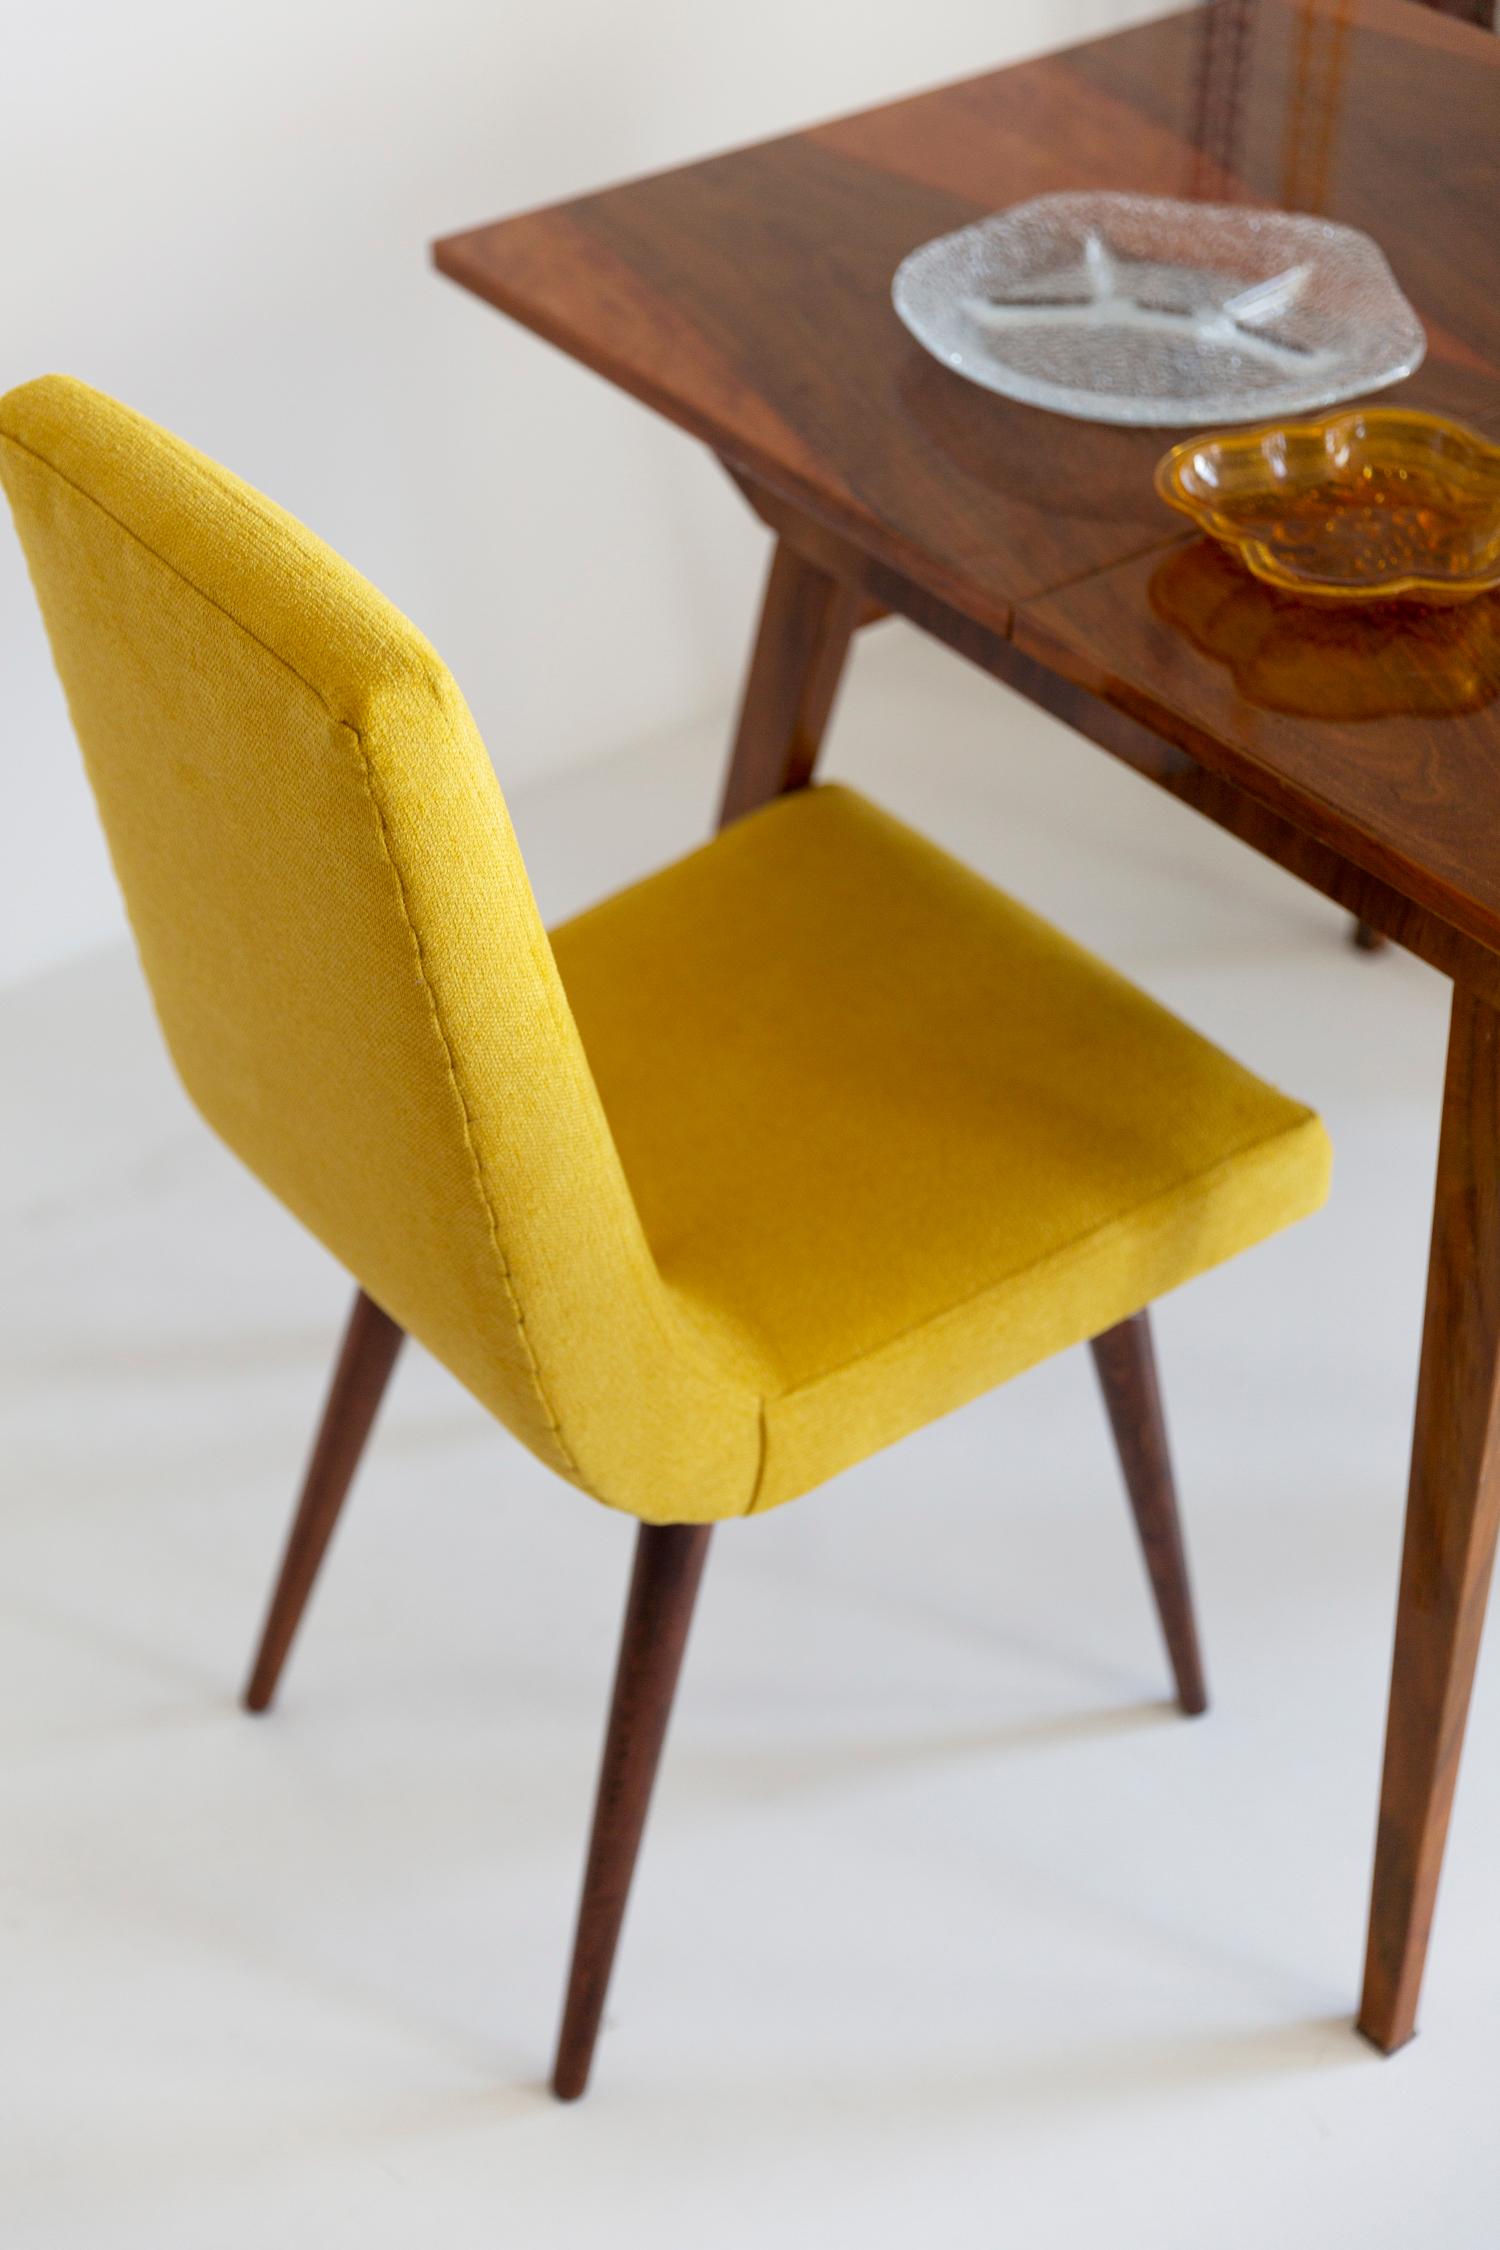 Polish Set of Ten Midcentury Mustard Yellow Wool Chairs, Rajmund Halas Europe, 1960s For Sale